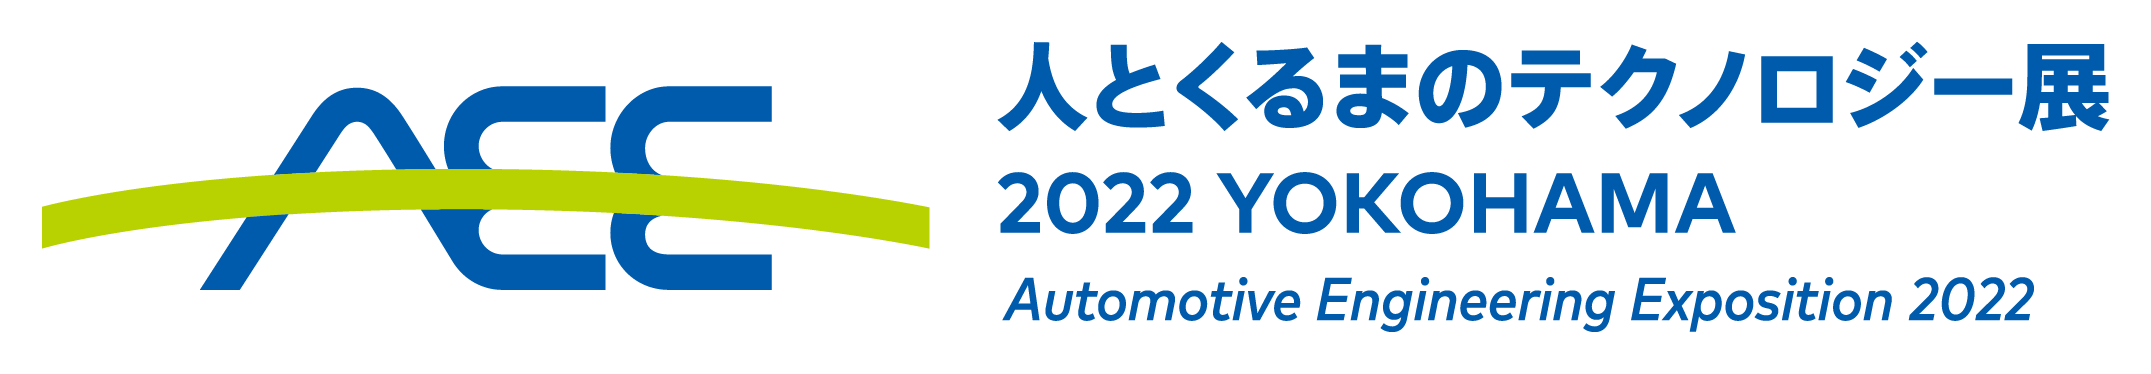 人とくるまのテクノロジー展2022横浜ロゴ.png